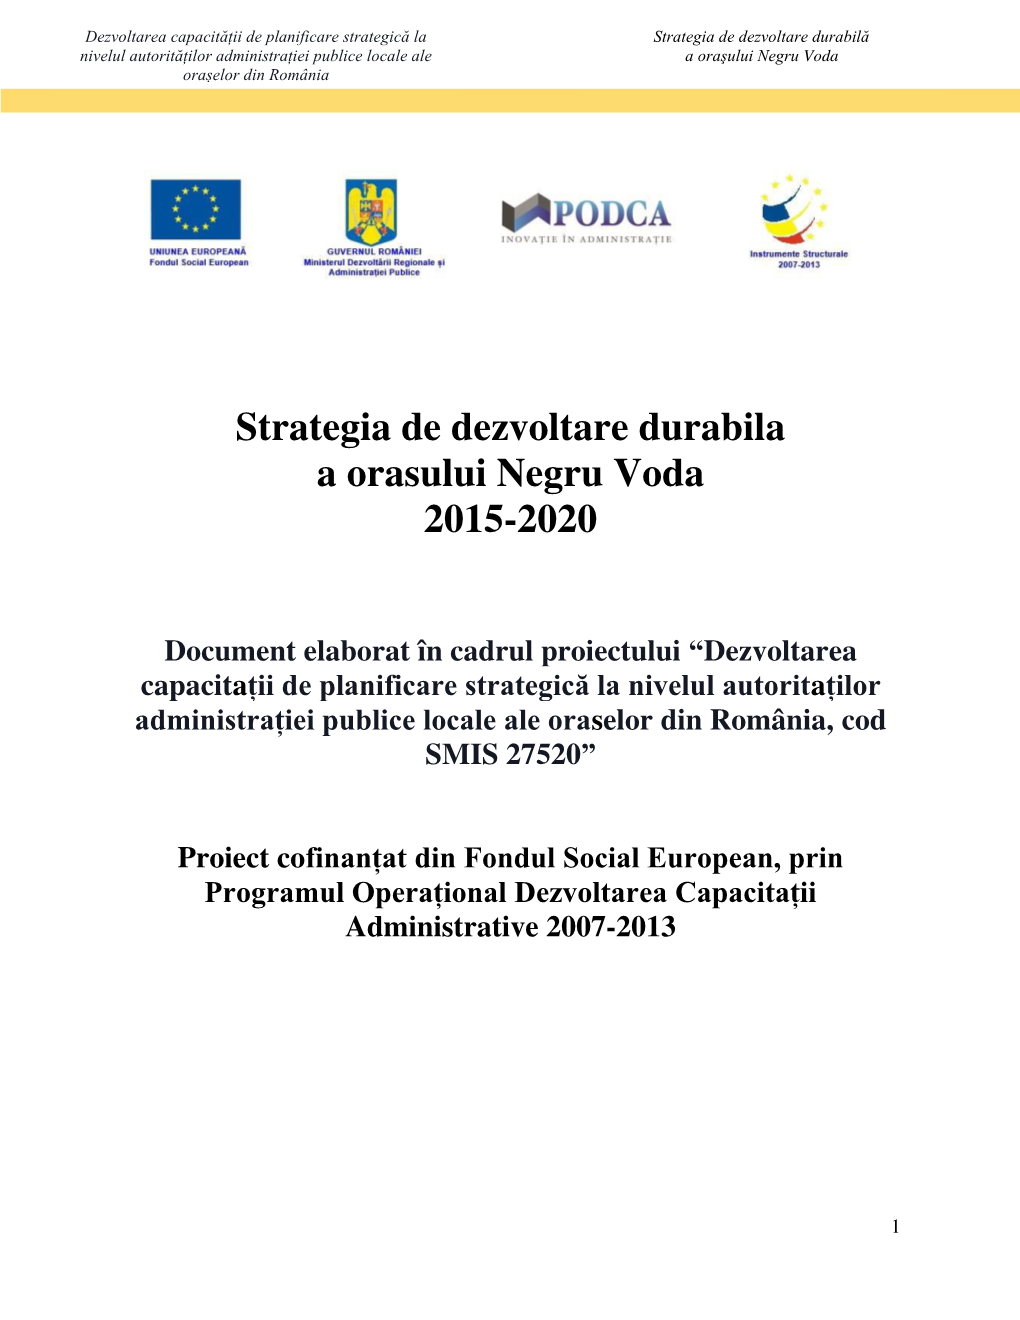 Strategia De Dezvoltare Durabila a Orasului Negru Voda 2015-2020